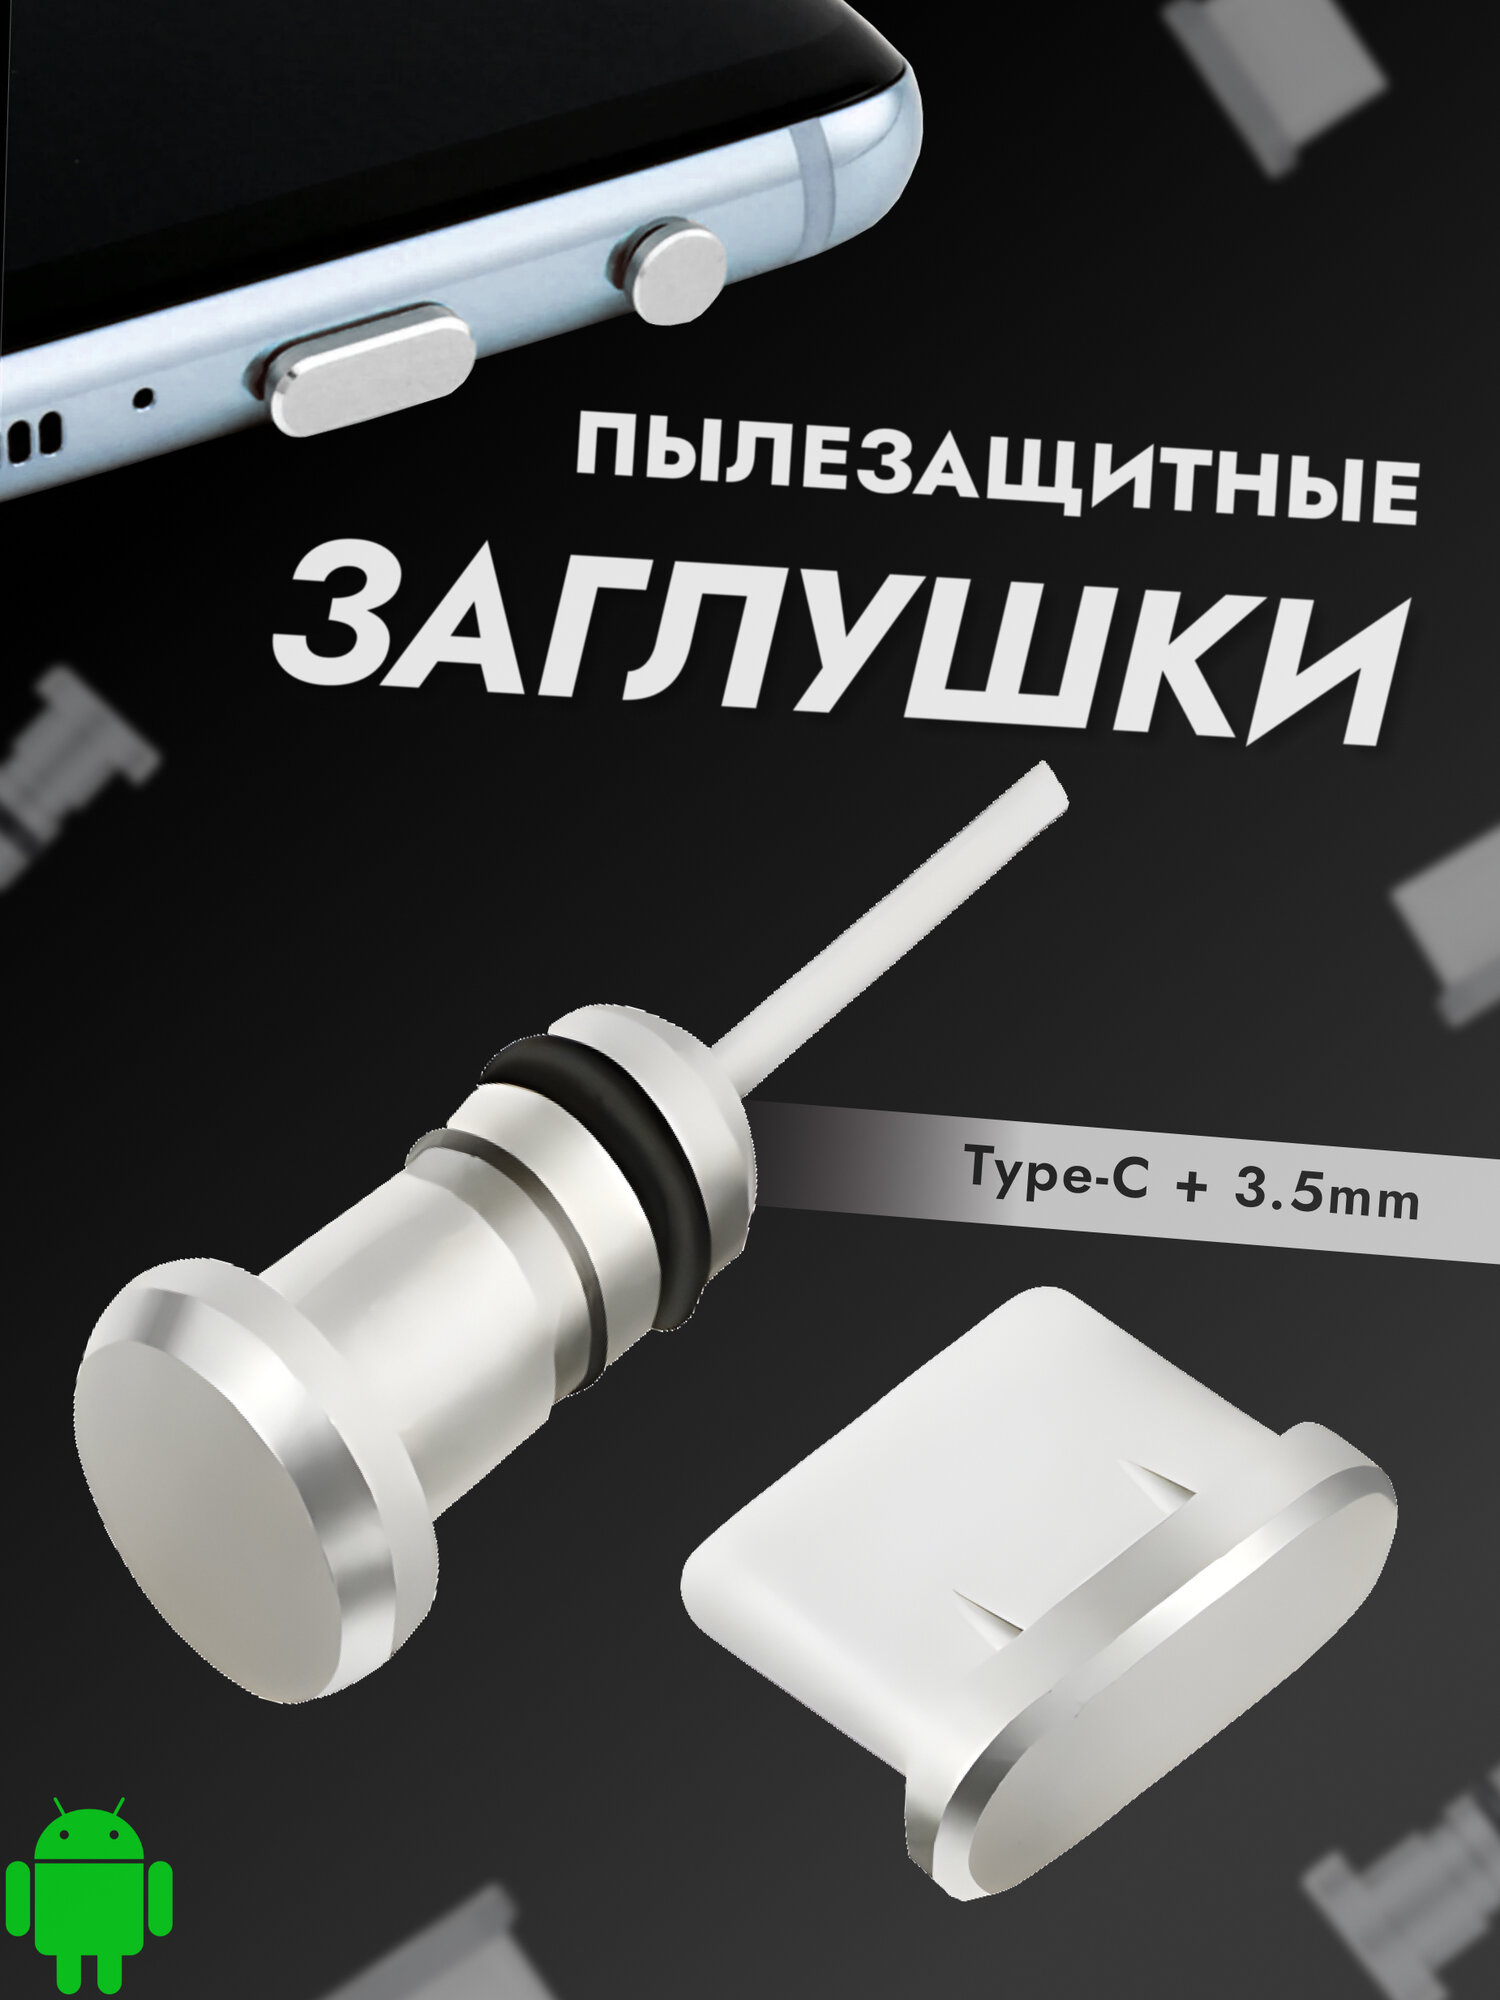 Комплект универсальных пылезащитных заглушек для TYPE-C и 3,5 аудио разъемов телефонов и планшетов